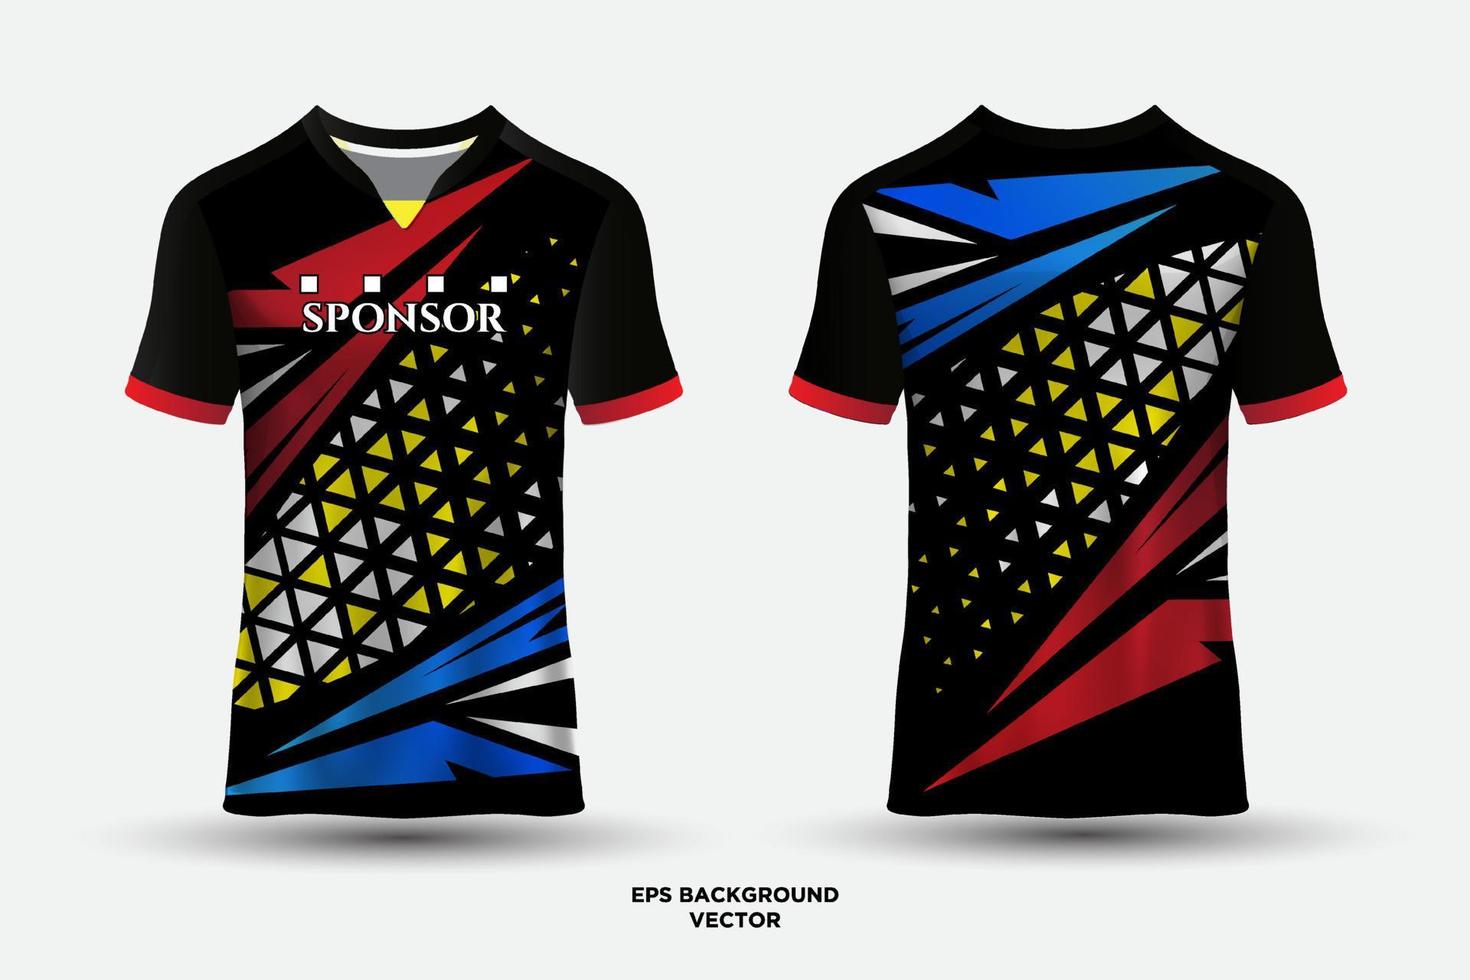 Maravilloso diseño de camiseta deportiva adecuada para carreras, fútbol, deportes electrónicos. vector